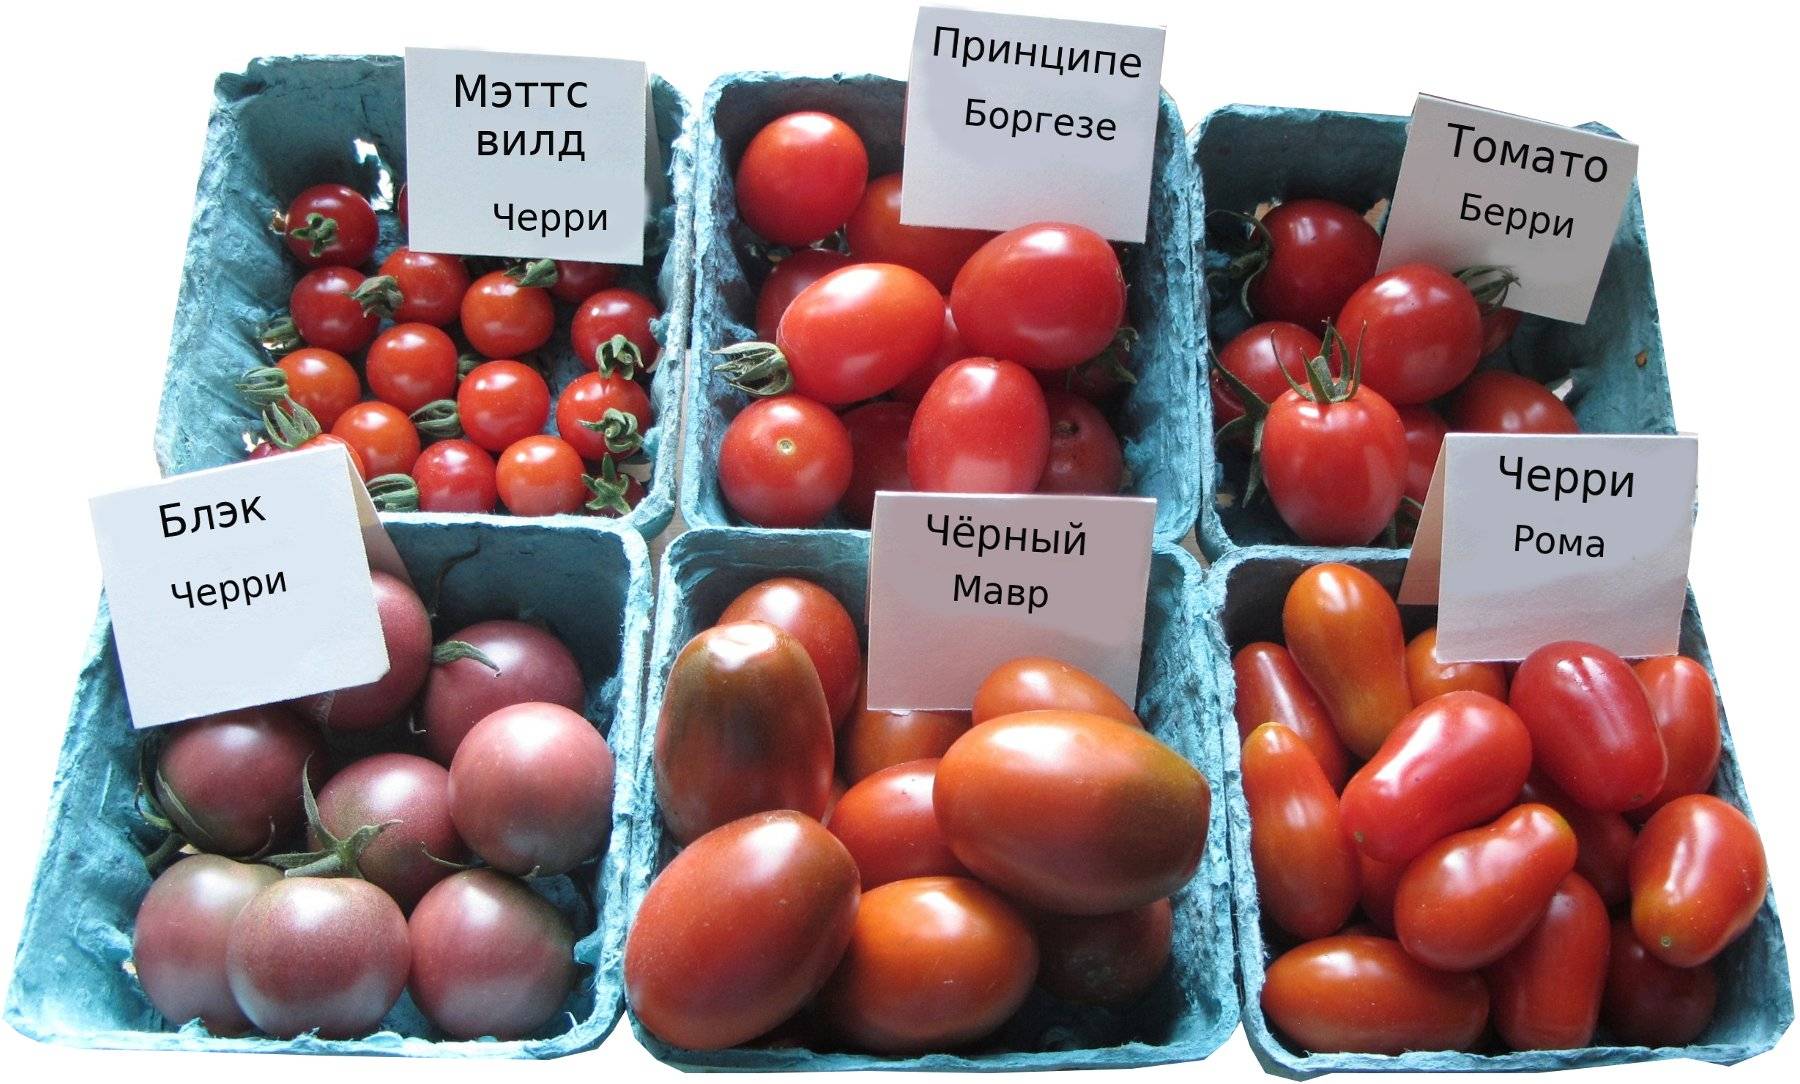 Томат стеша f1: отзывы тех кто сажал помидоры об их урожайности, характеристика и описание индетерминантного сорта, фото куста